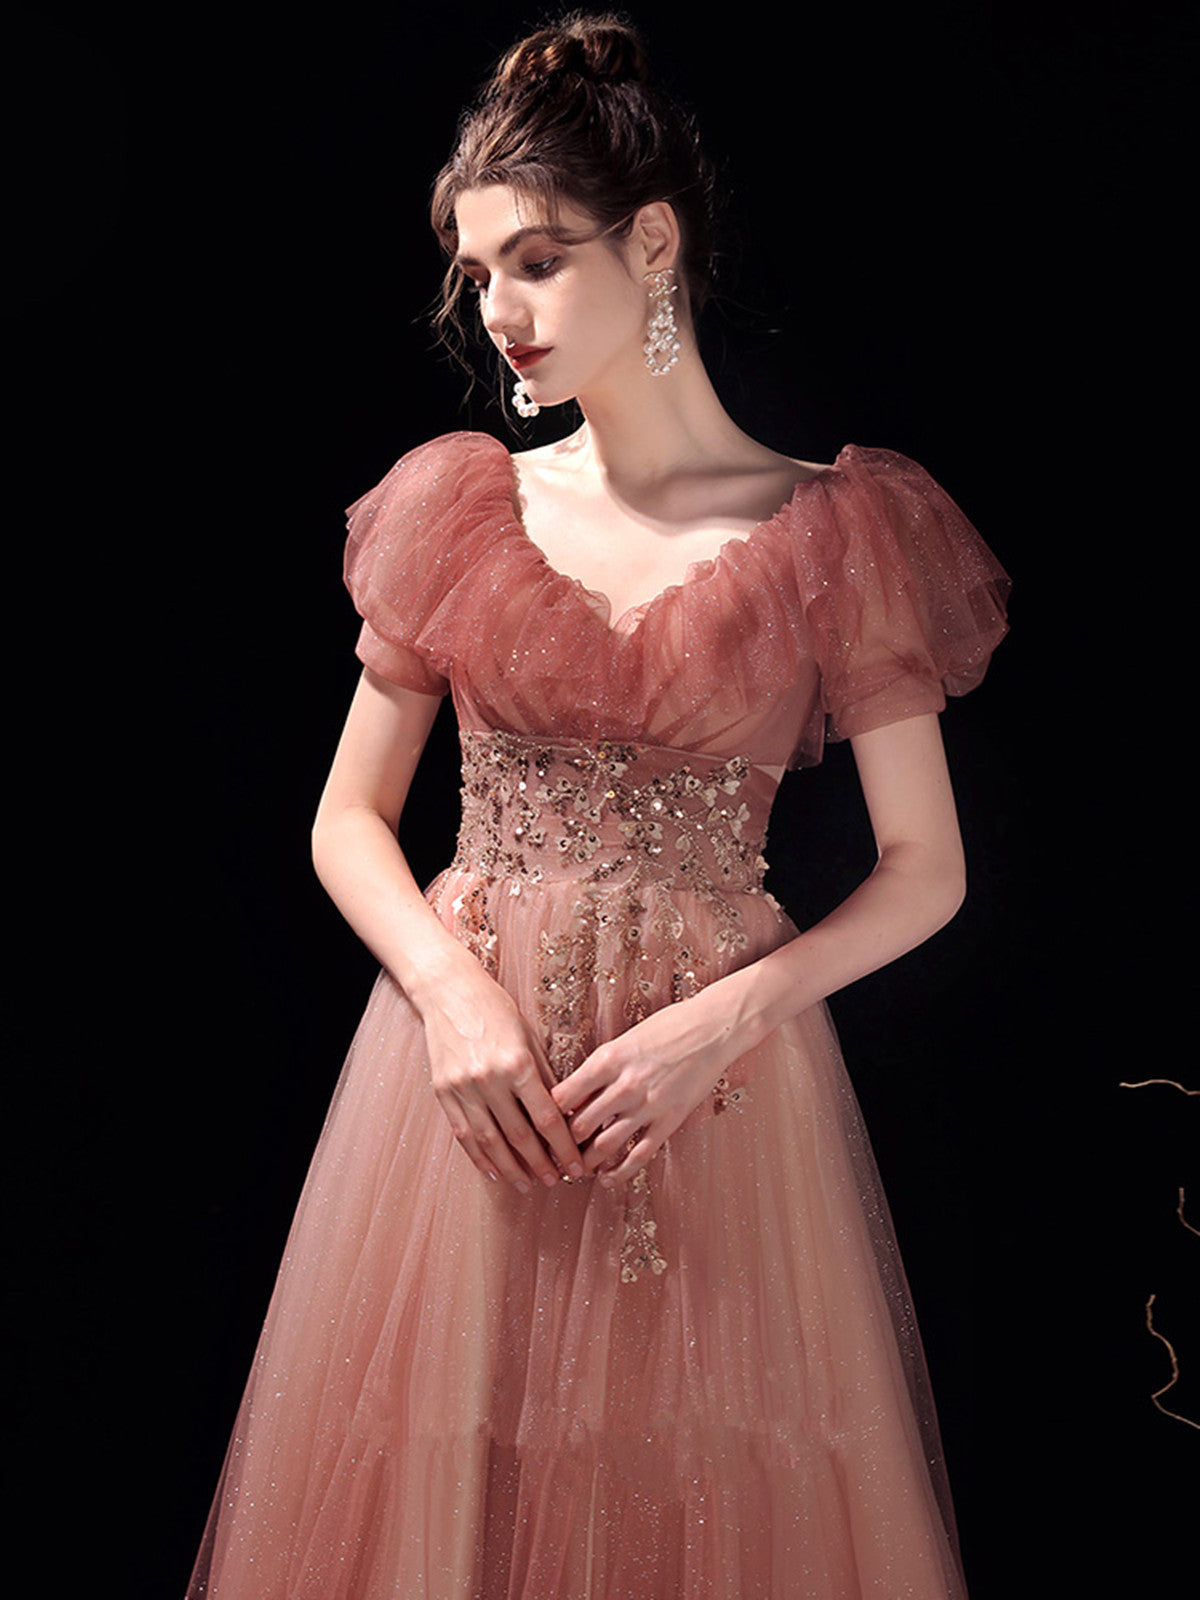 Pink V-neckline Tulle Long Formal Dress Prom Dress, Pink Tulle Evening Dress